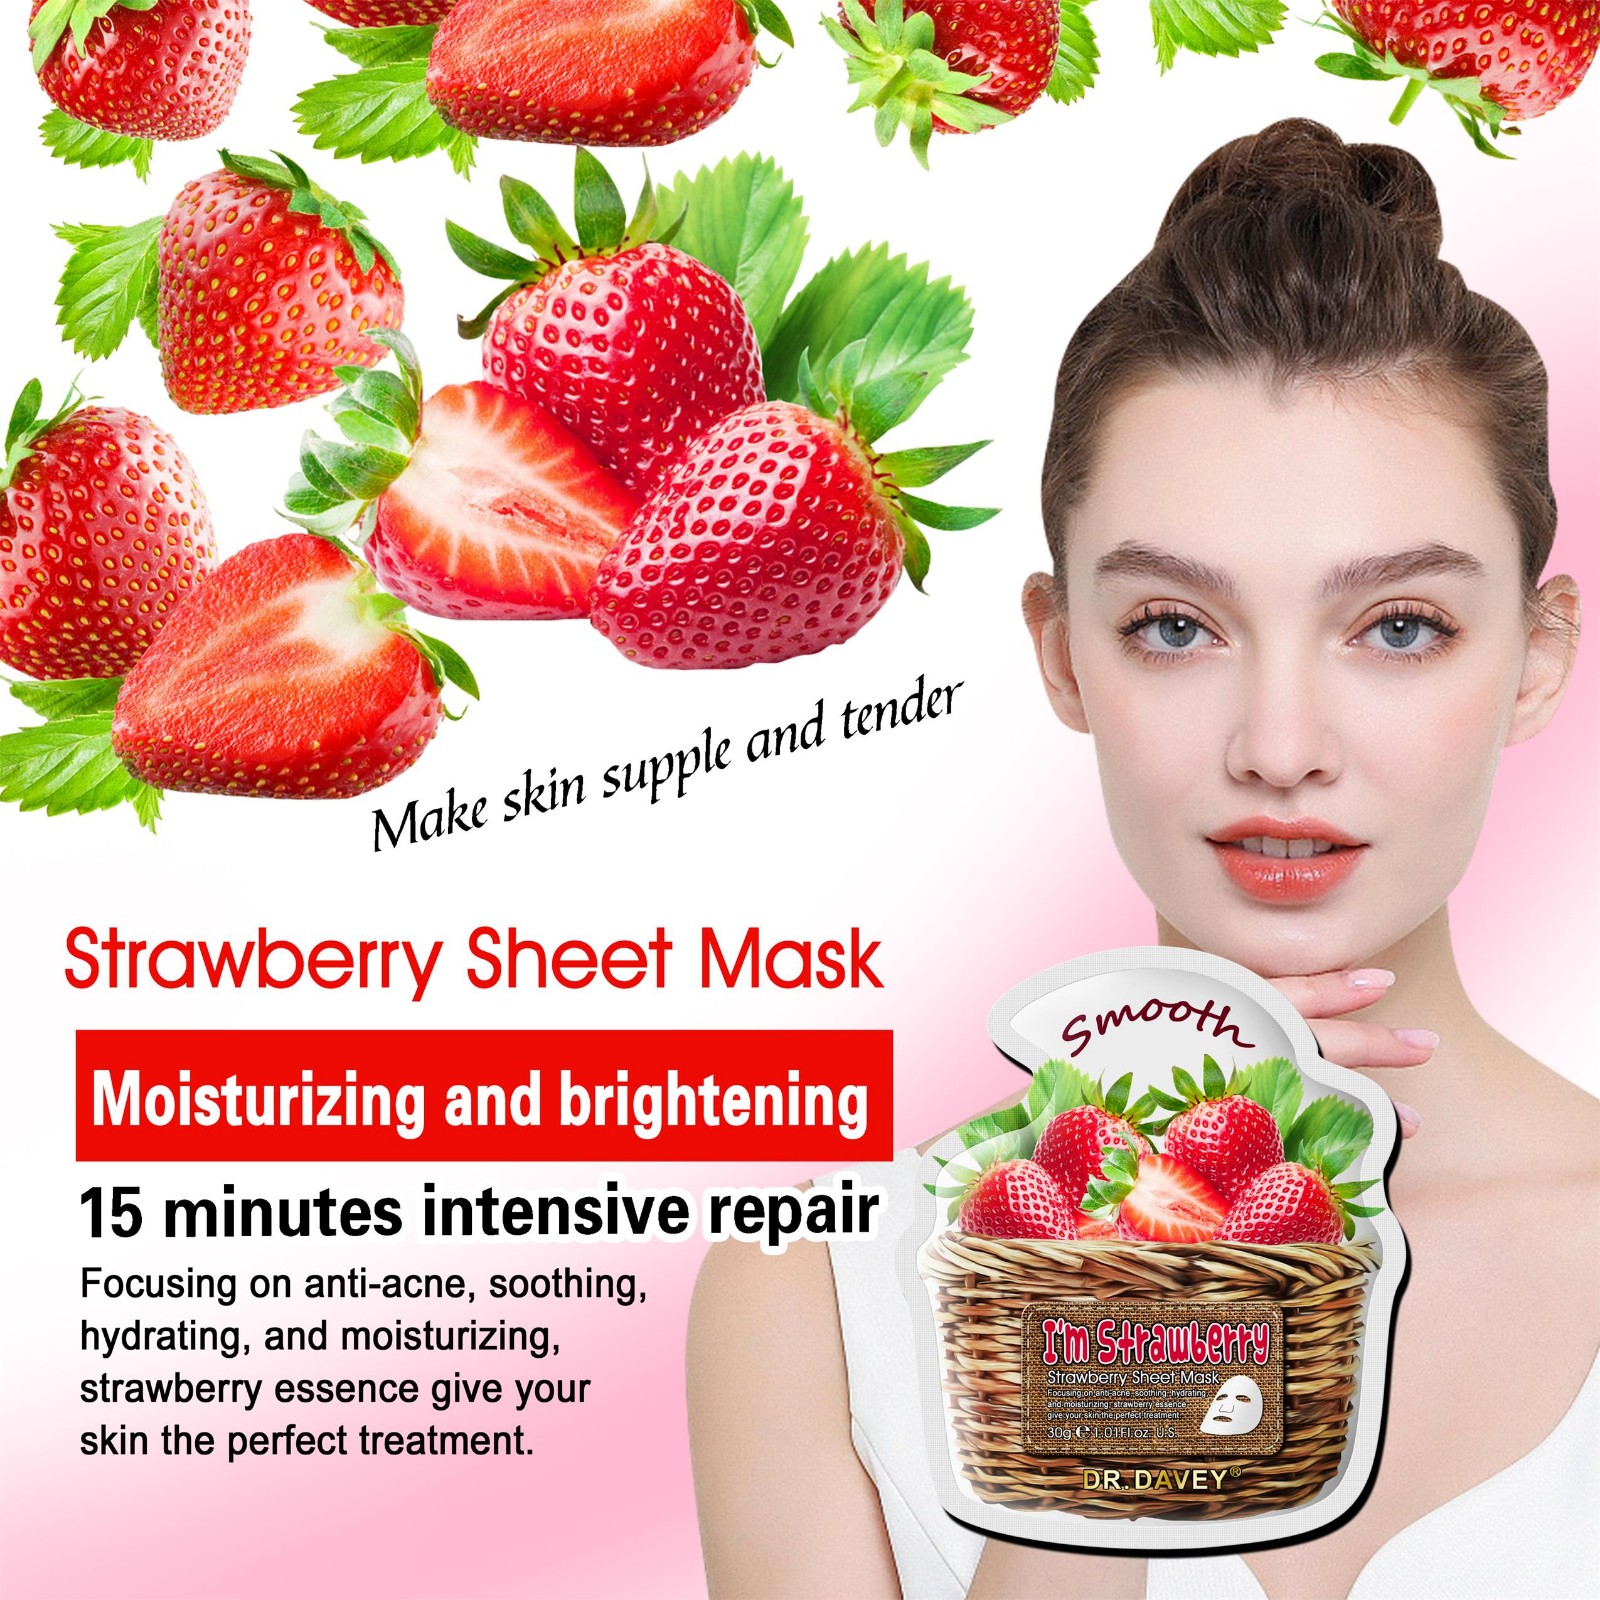 Strawberry mask sheet